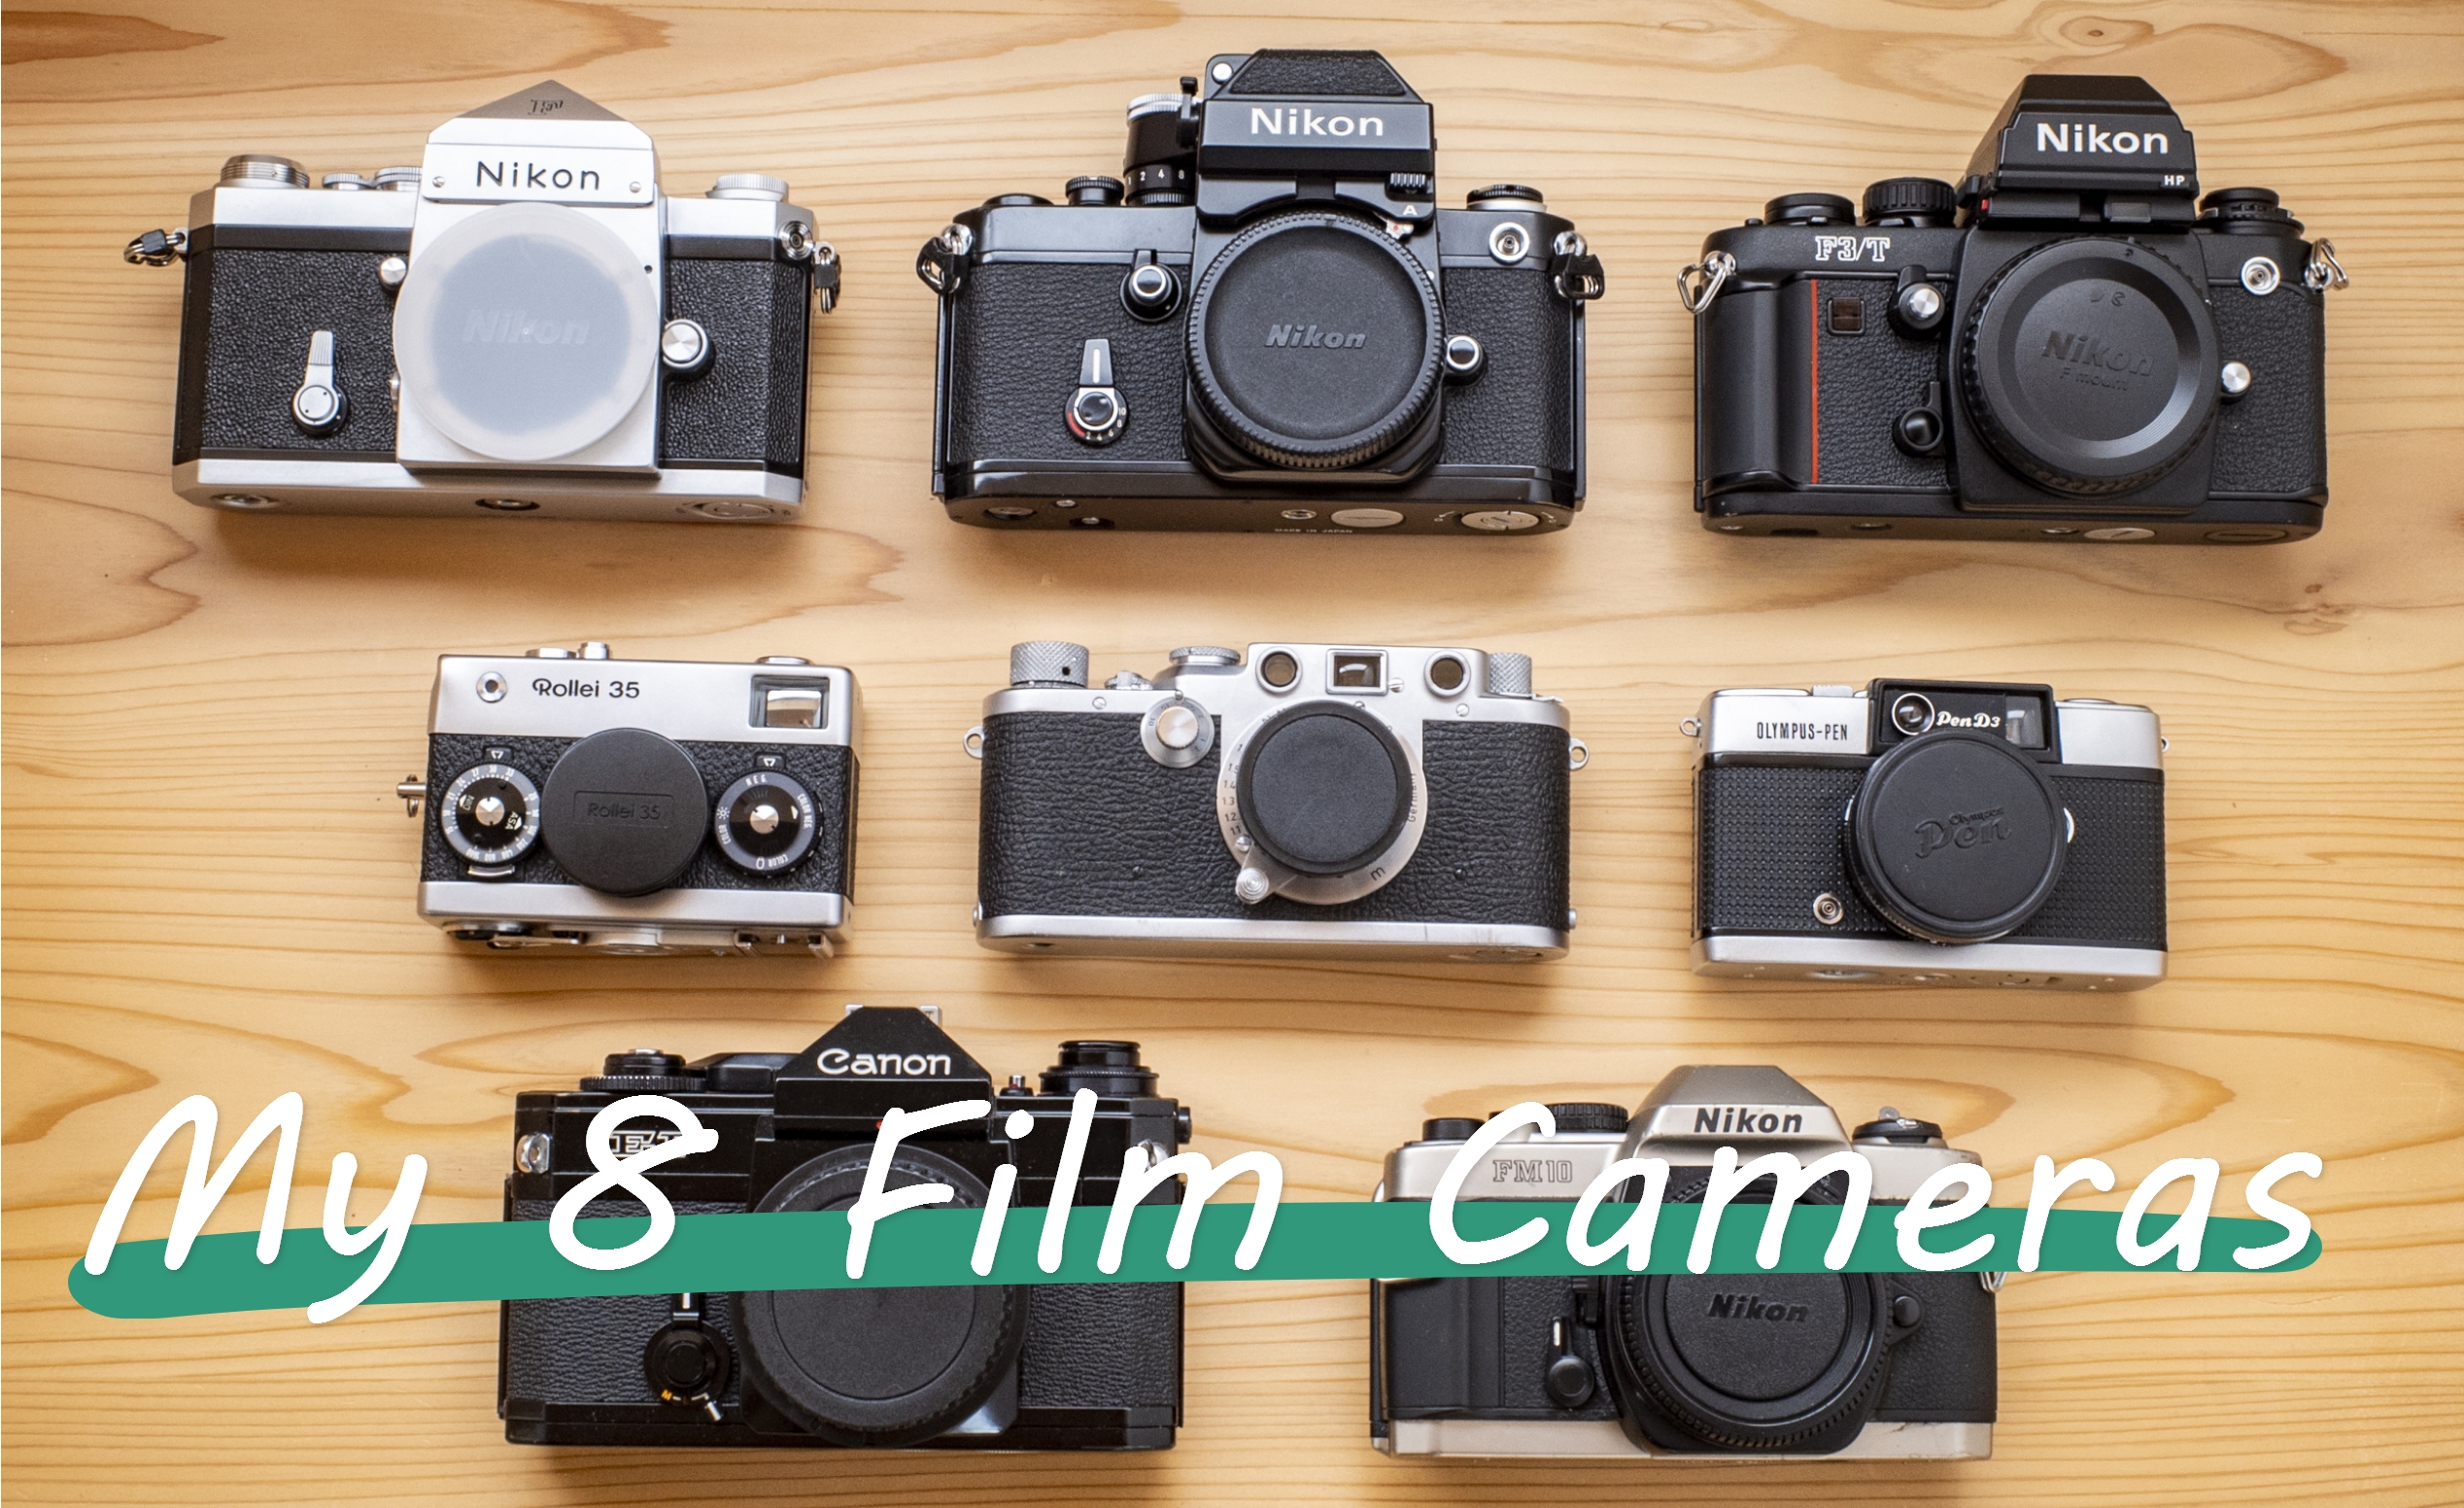 8台のフィルムカメラはこうして増えていった。カメラ遍歴と使い分け術